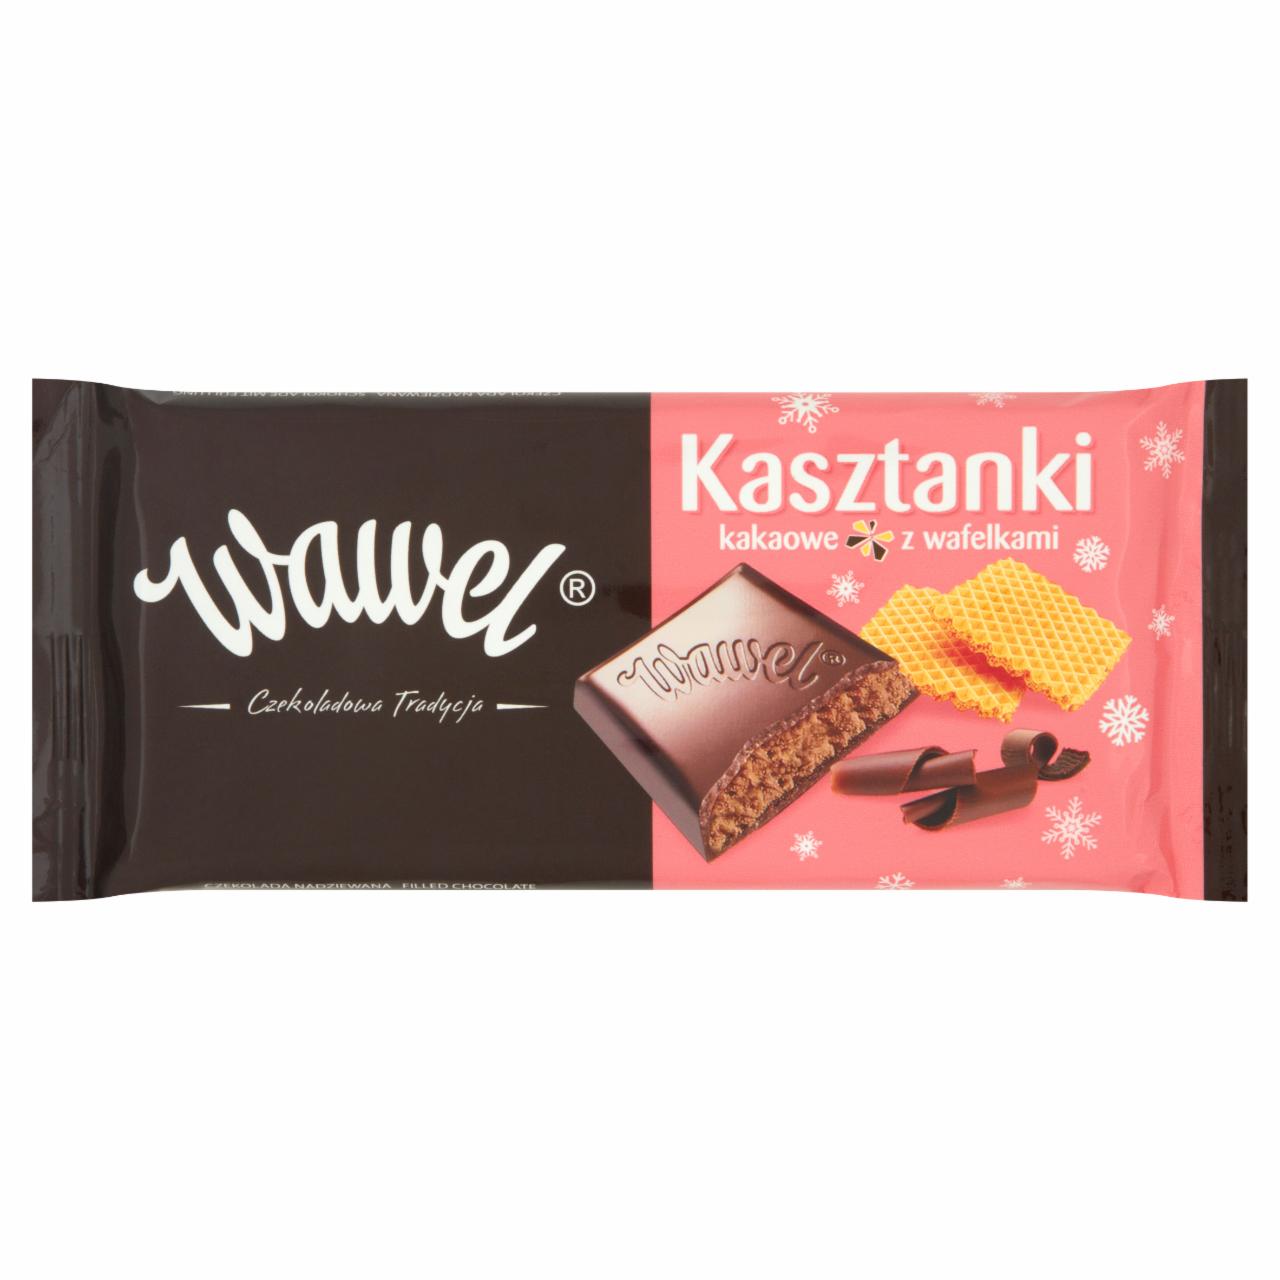 Zdjęcia - Wawel Kasztanki kakaowe z wafelkami Czekolada nadziewana 100 g